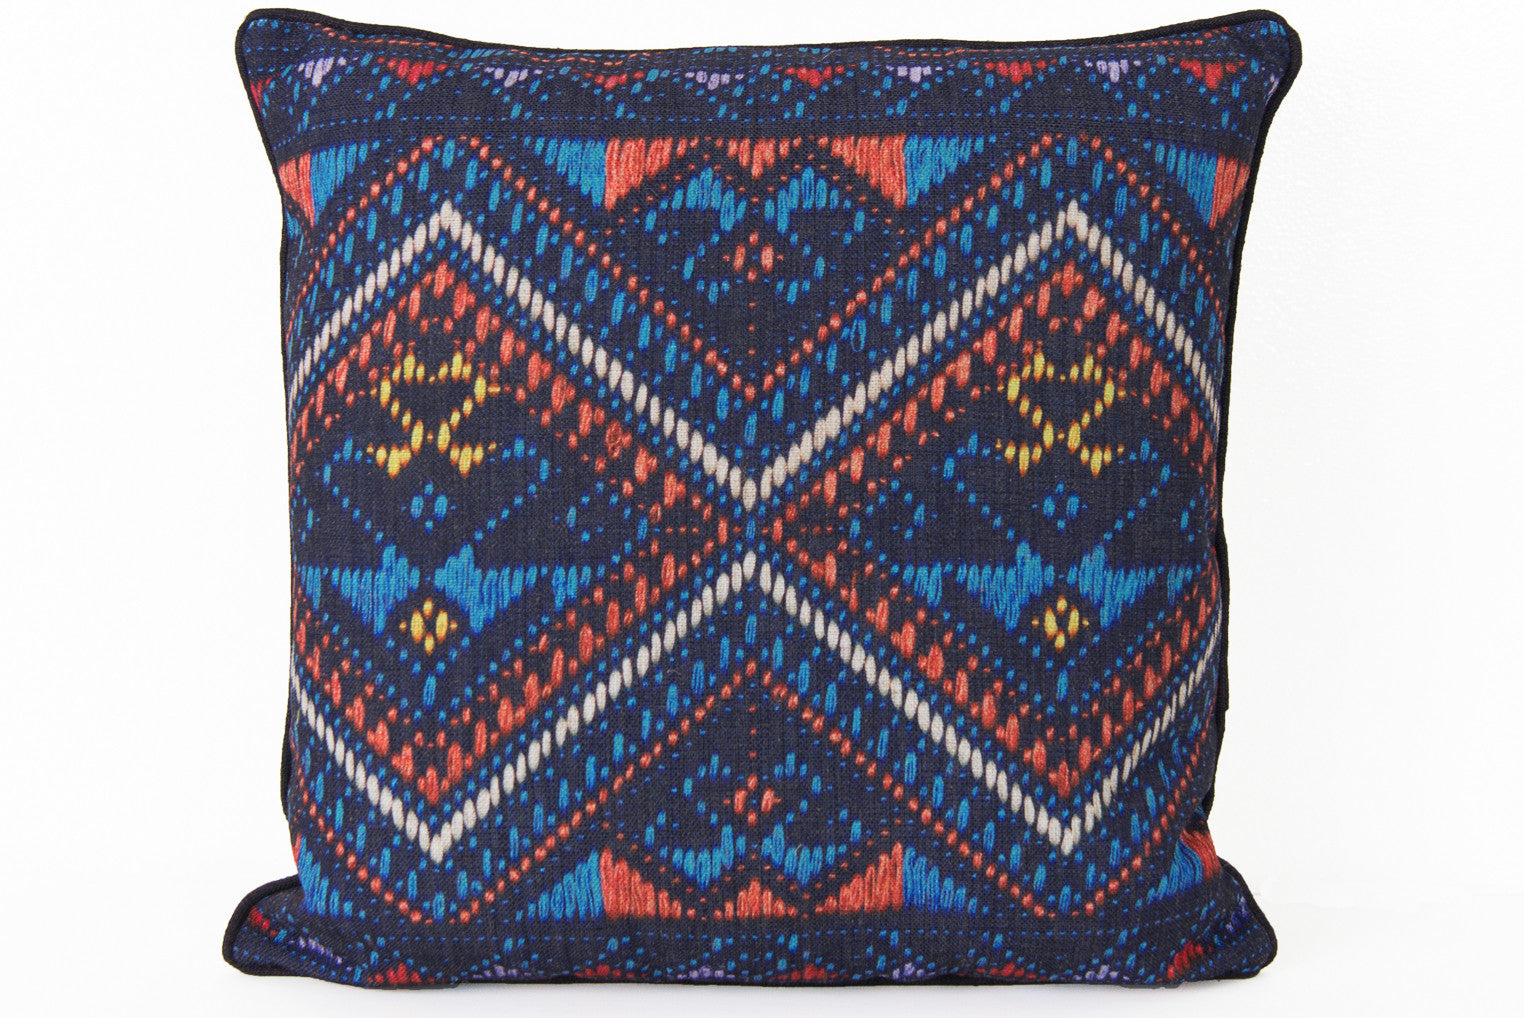 Aztec Pillow - ModShop1.com